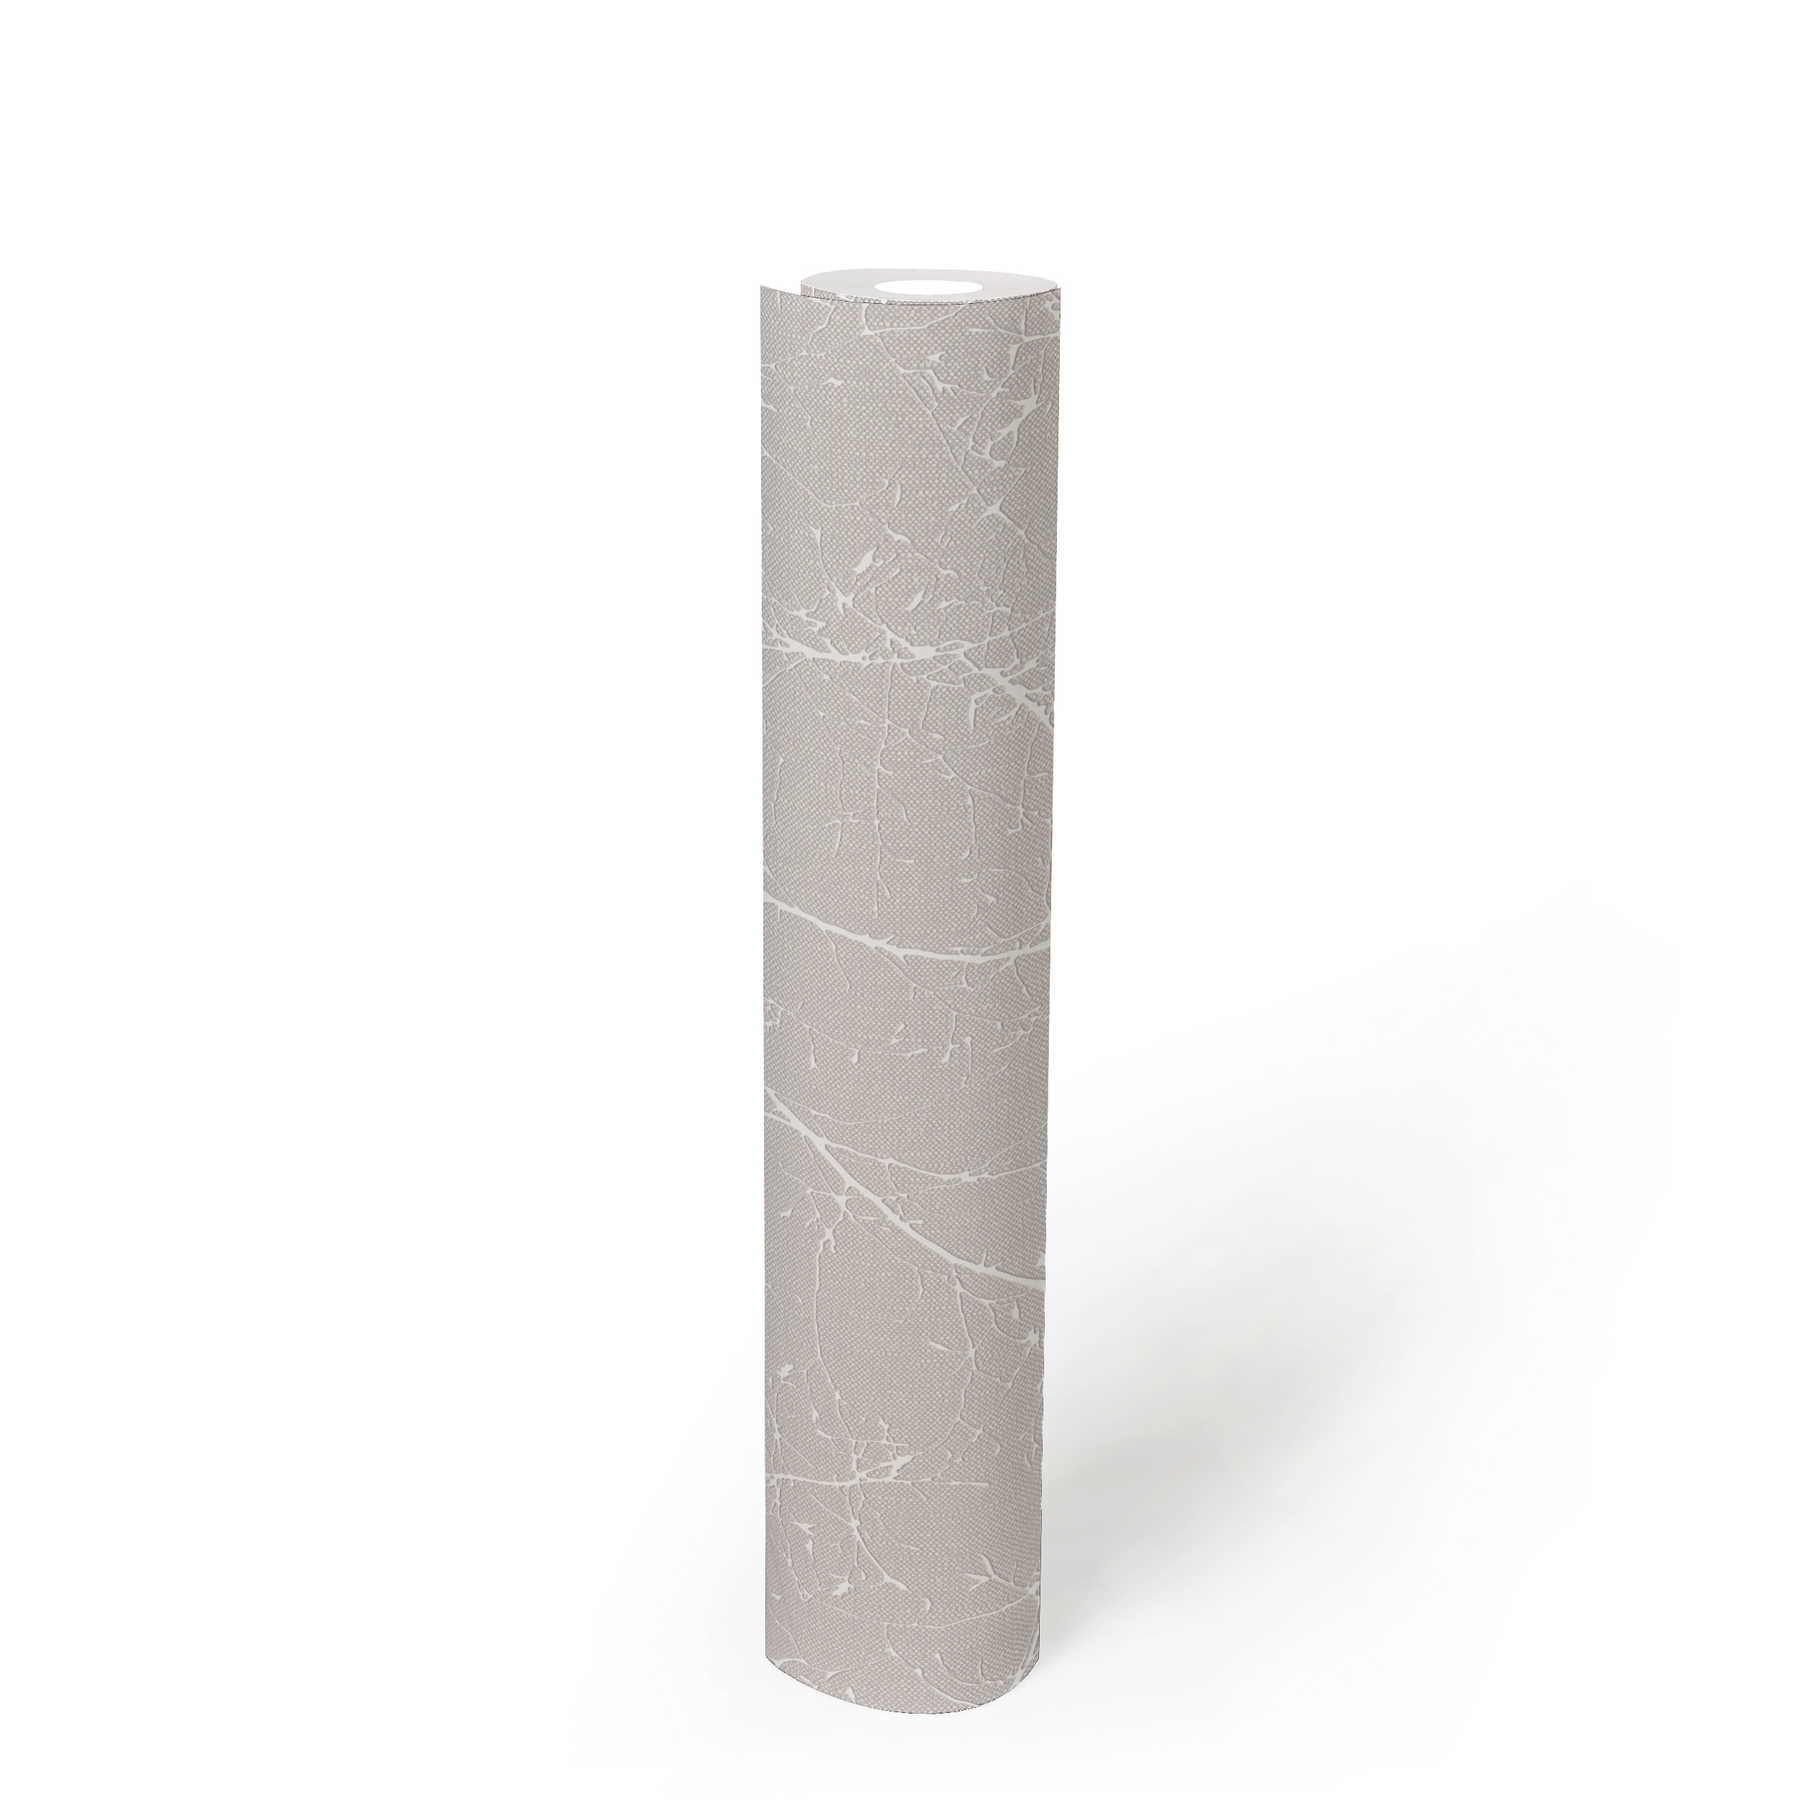             Vliestapete mit Leinenoptik Blüten und Zweigen – Grau, Weiß
        